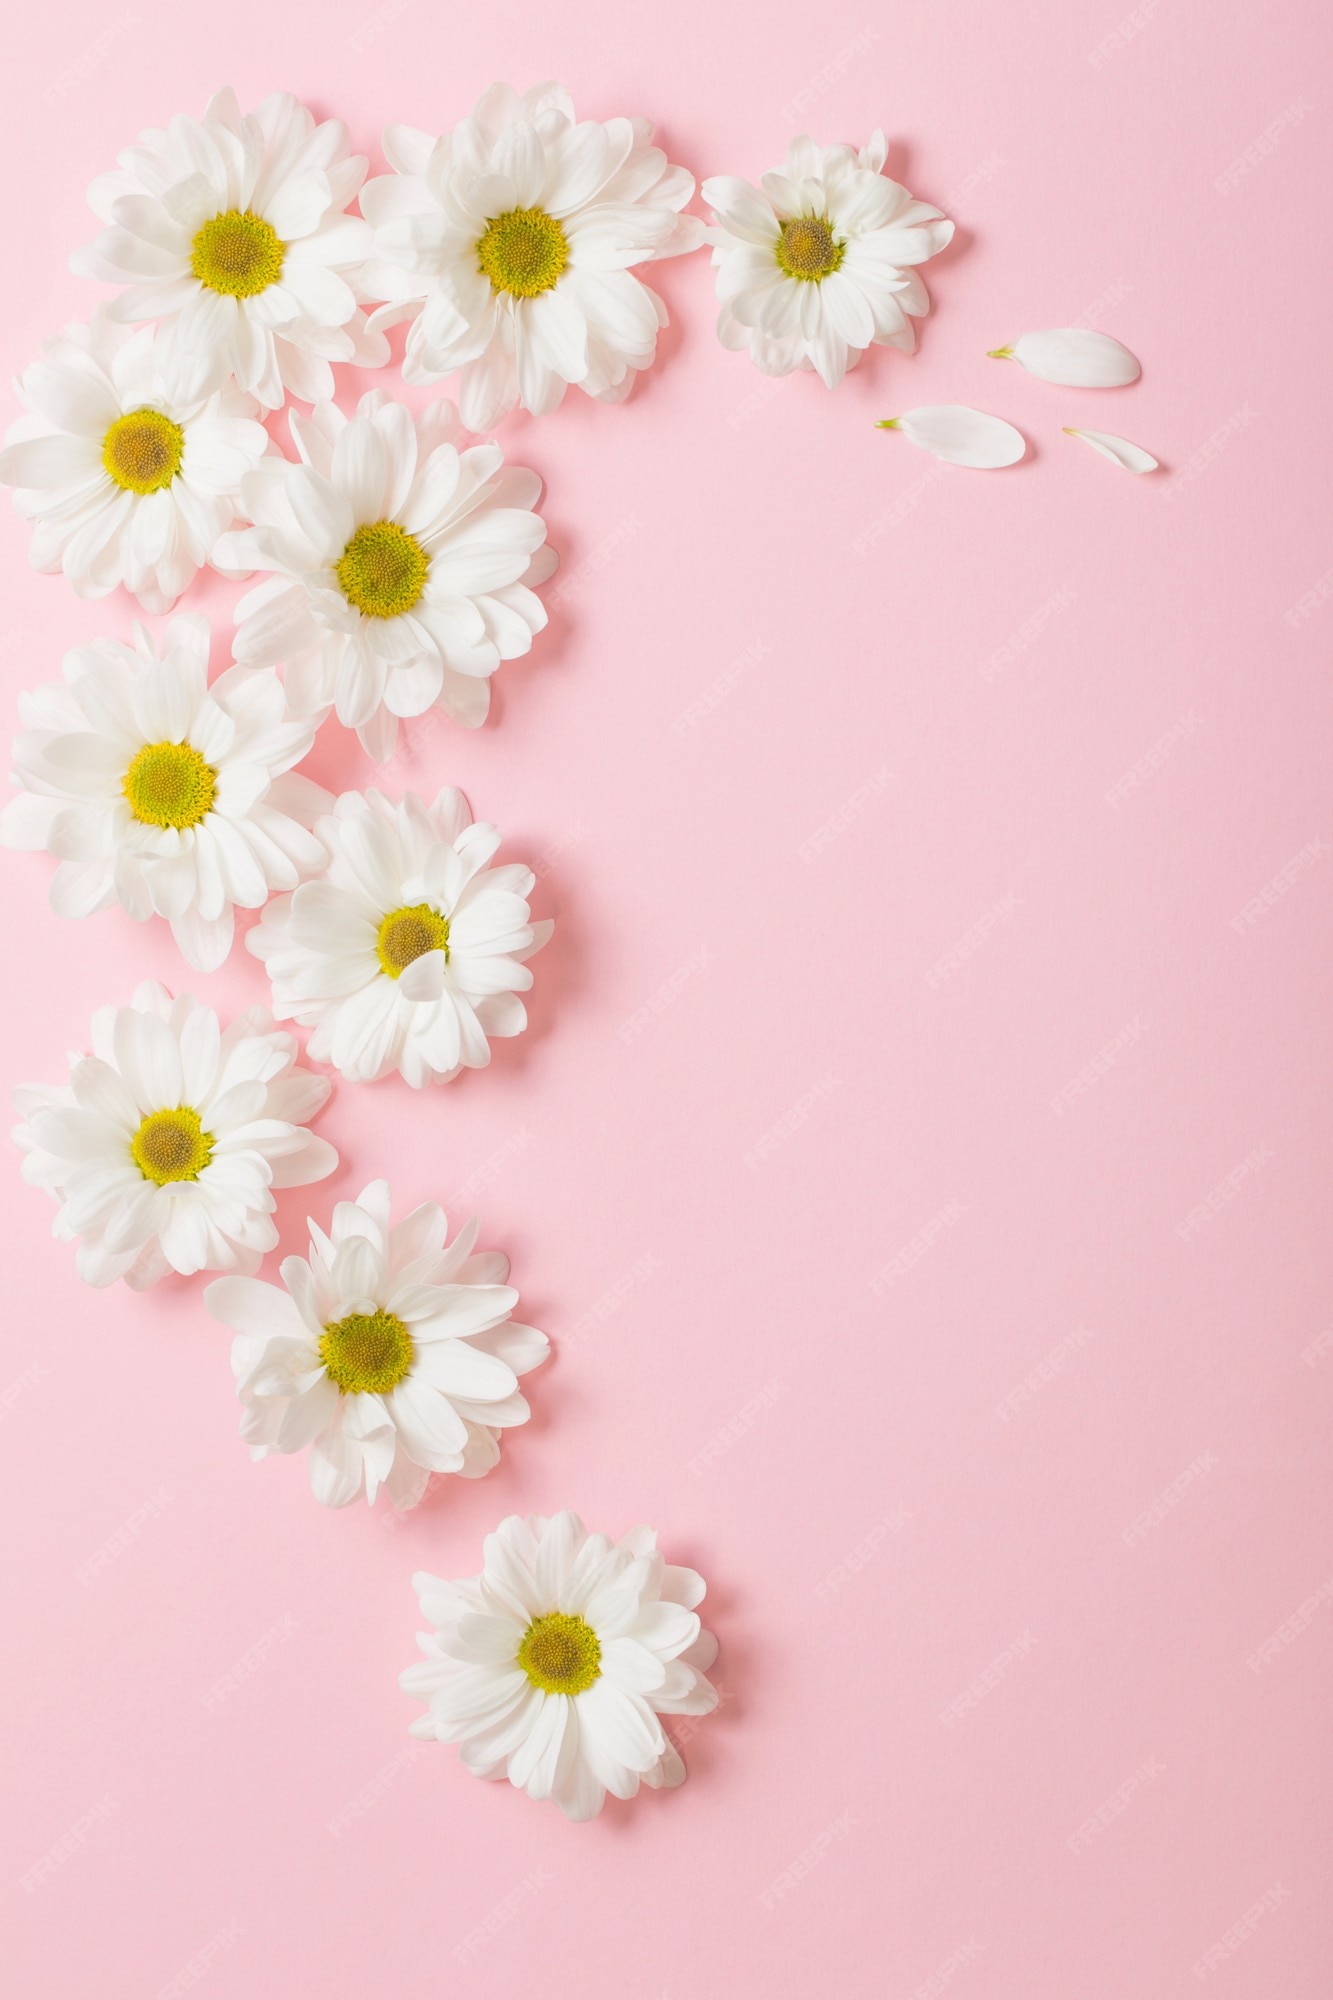 Hãy cùng thưởng thức những bức ảnh cao cấp về hoa trắng trên nền hồng nhạt để cảm nhận được sự độc đáo và xinh đẹp của loài hoa này. Màu sắc tinh tế, gam màu trầm ấm sẽ đưa bạn vào không gian thật đặc biệt và ấn tượng.